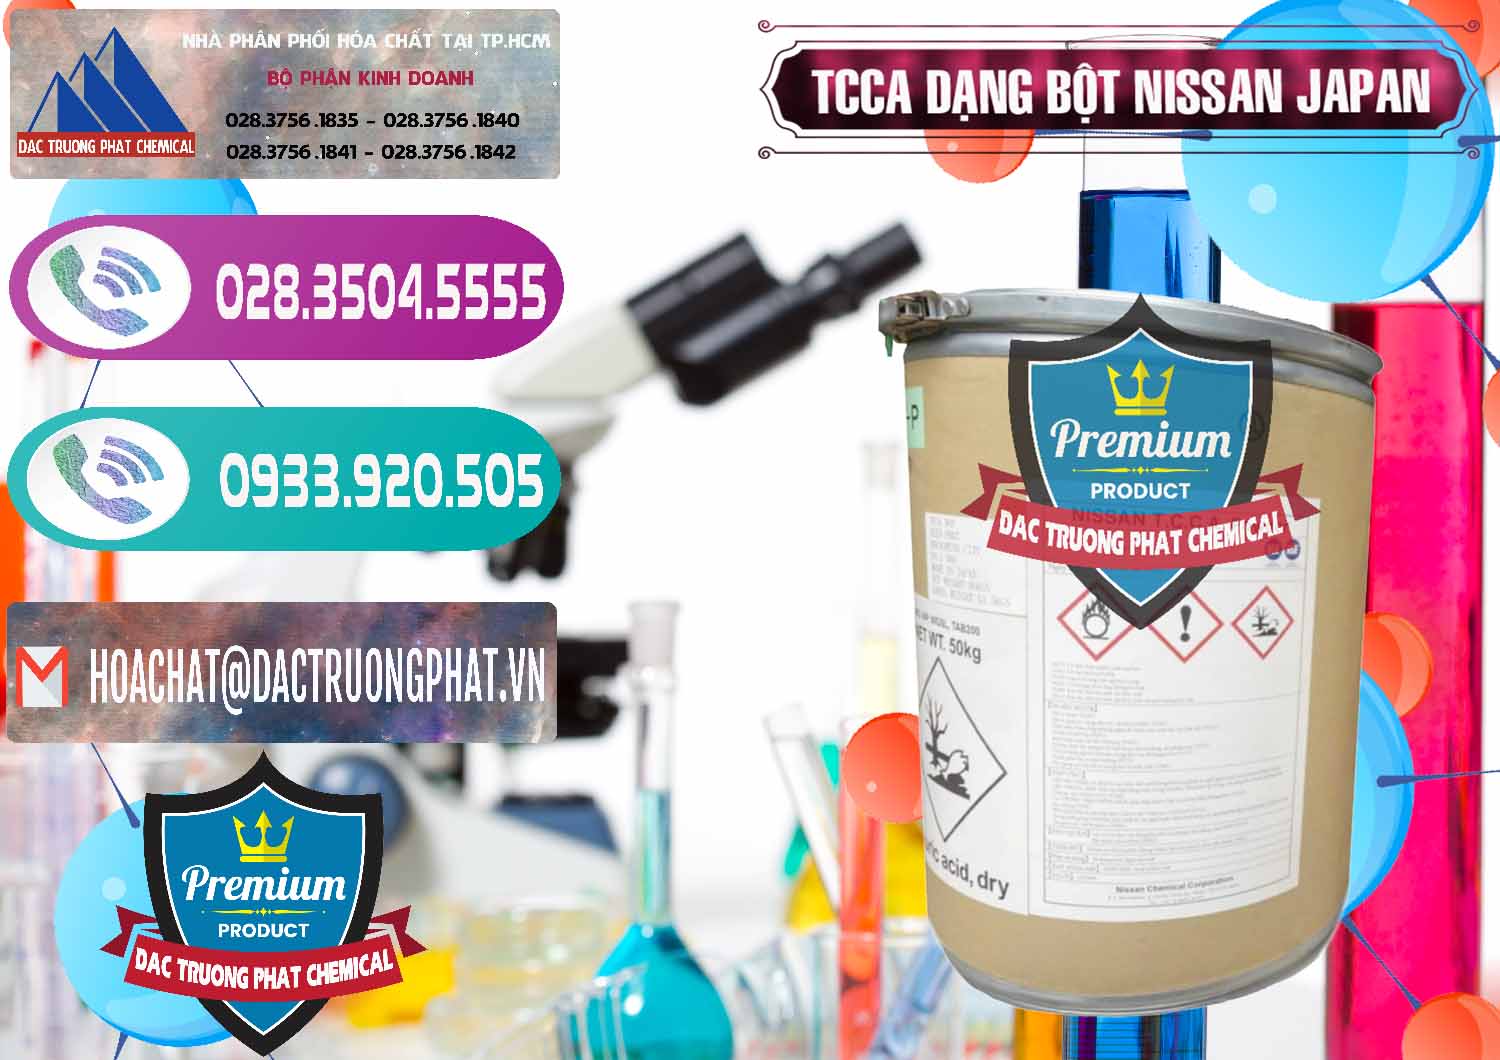 Chuyên phân phối ( bán ) TCCA - Acid Trichloroisocyanuric 90% Dạng Bột Nissan Nhật Bản Japan - 0375 - Nhà cung cấp & phân phối hóa chất tại TP.HCM - hoachatxulynuoc.com